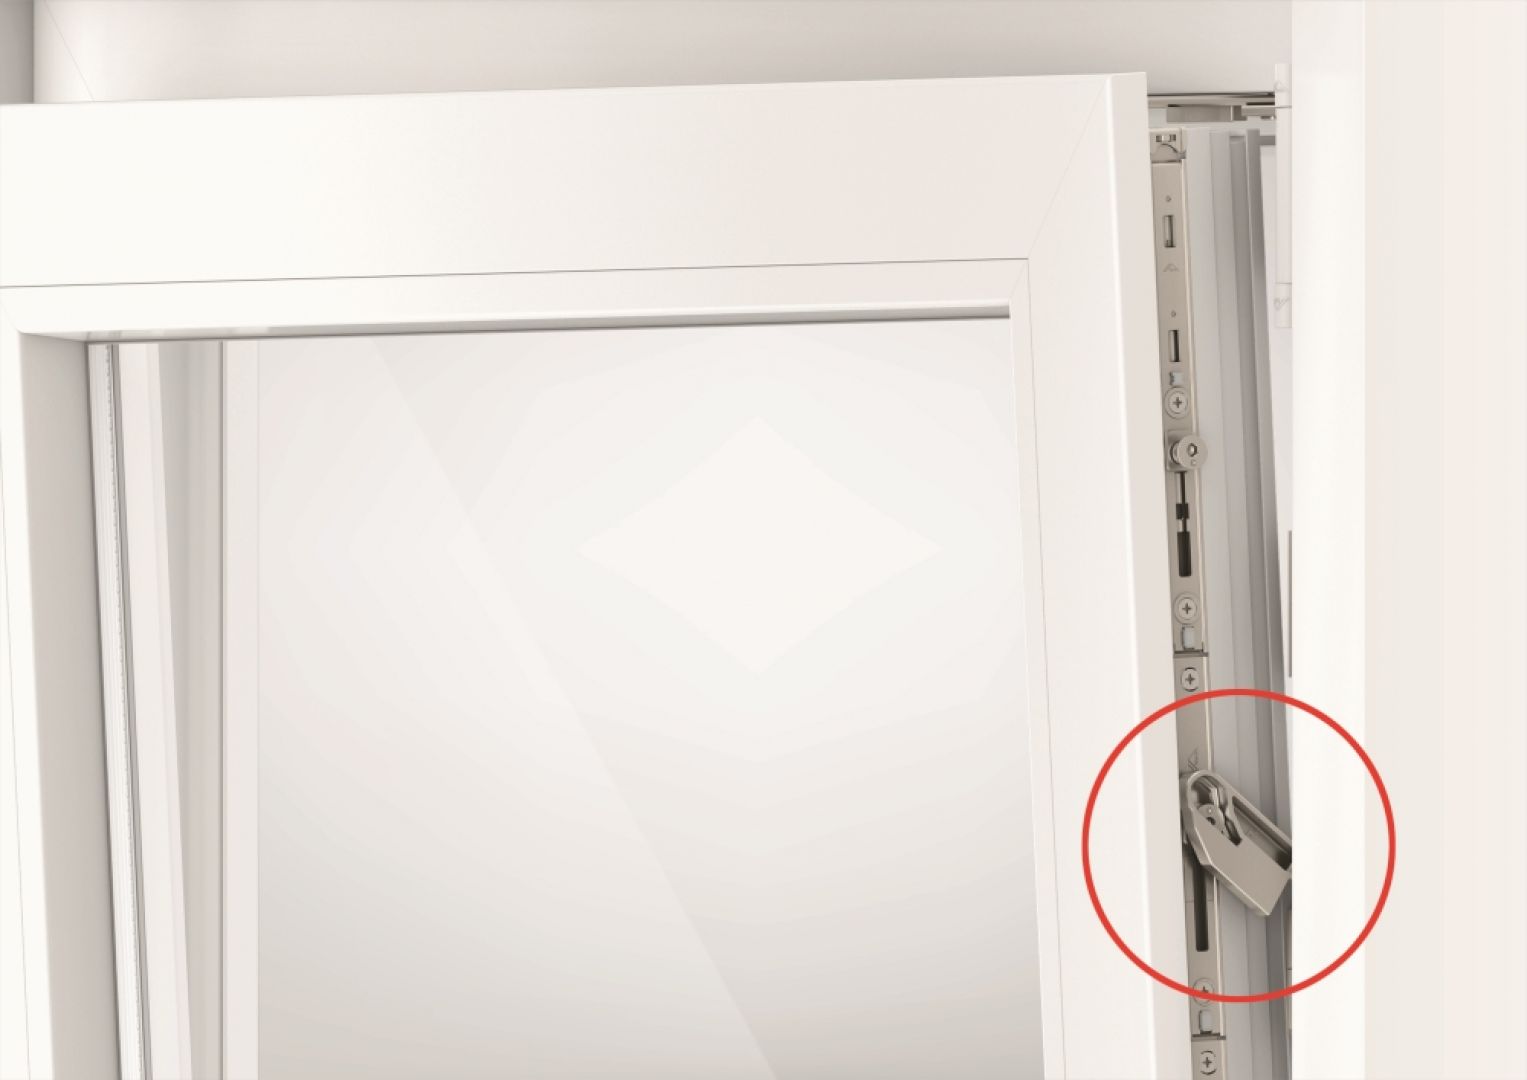 Szczelne okna można w każdej chwili uchylić i bezpiecznie wywietrzyć dom dzięki funkcji TiltSafe. Okucia Roto NX zapewniają oknom w pozycji uchylnej odporność antywyważeniową klasy RC 2. Fot. Roto